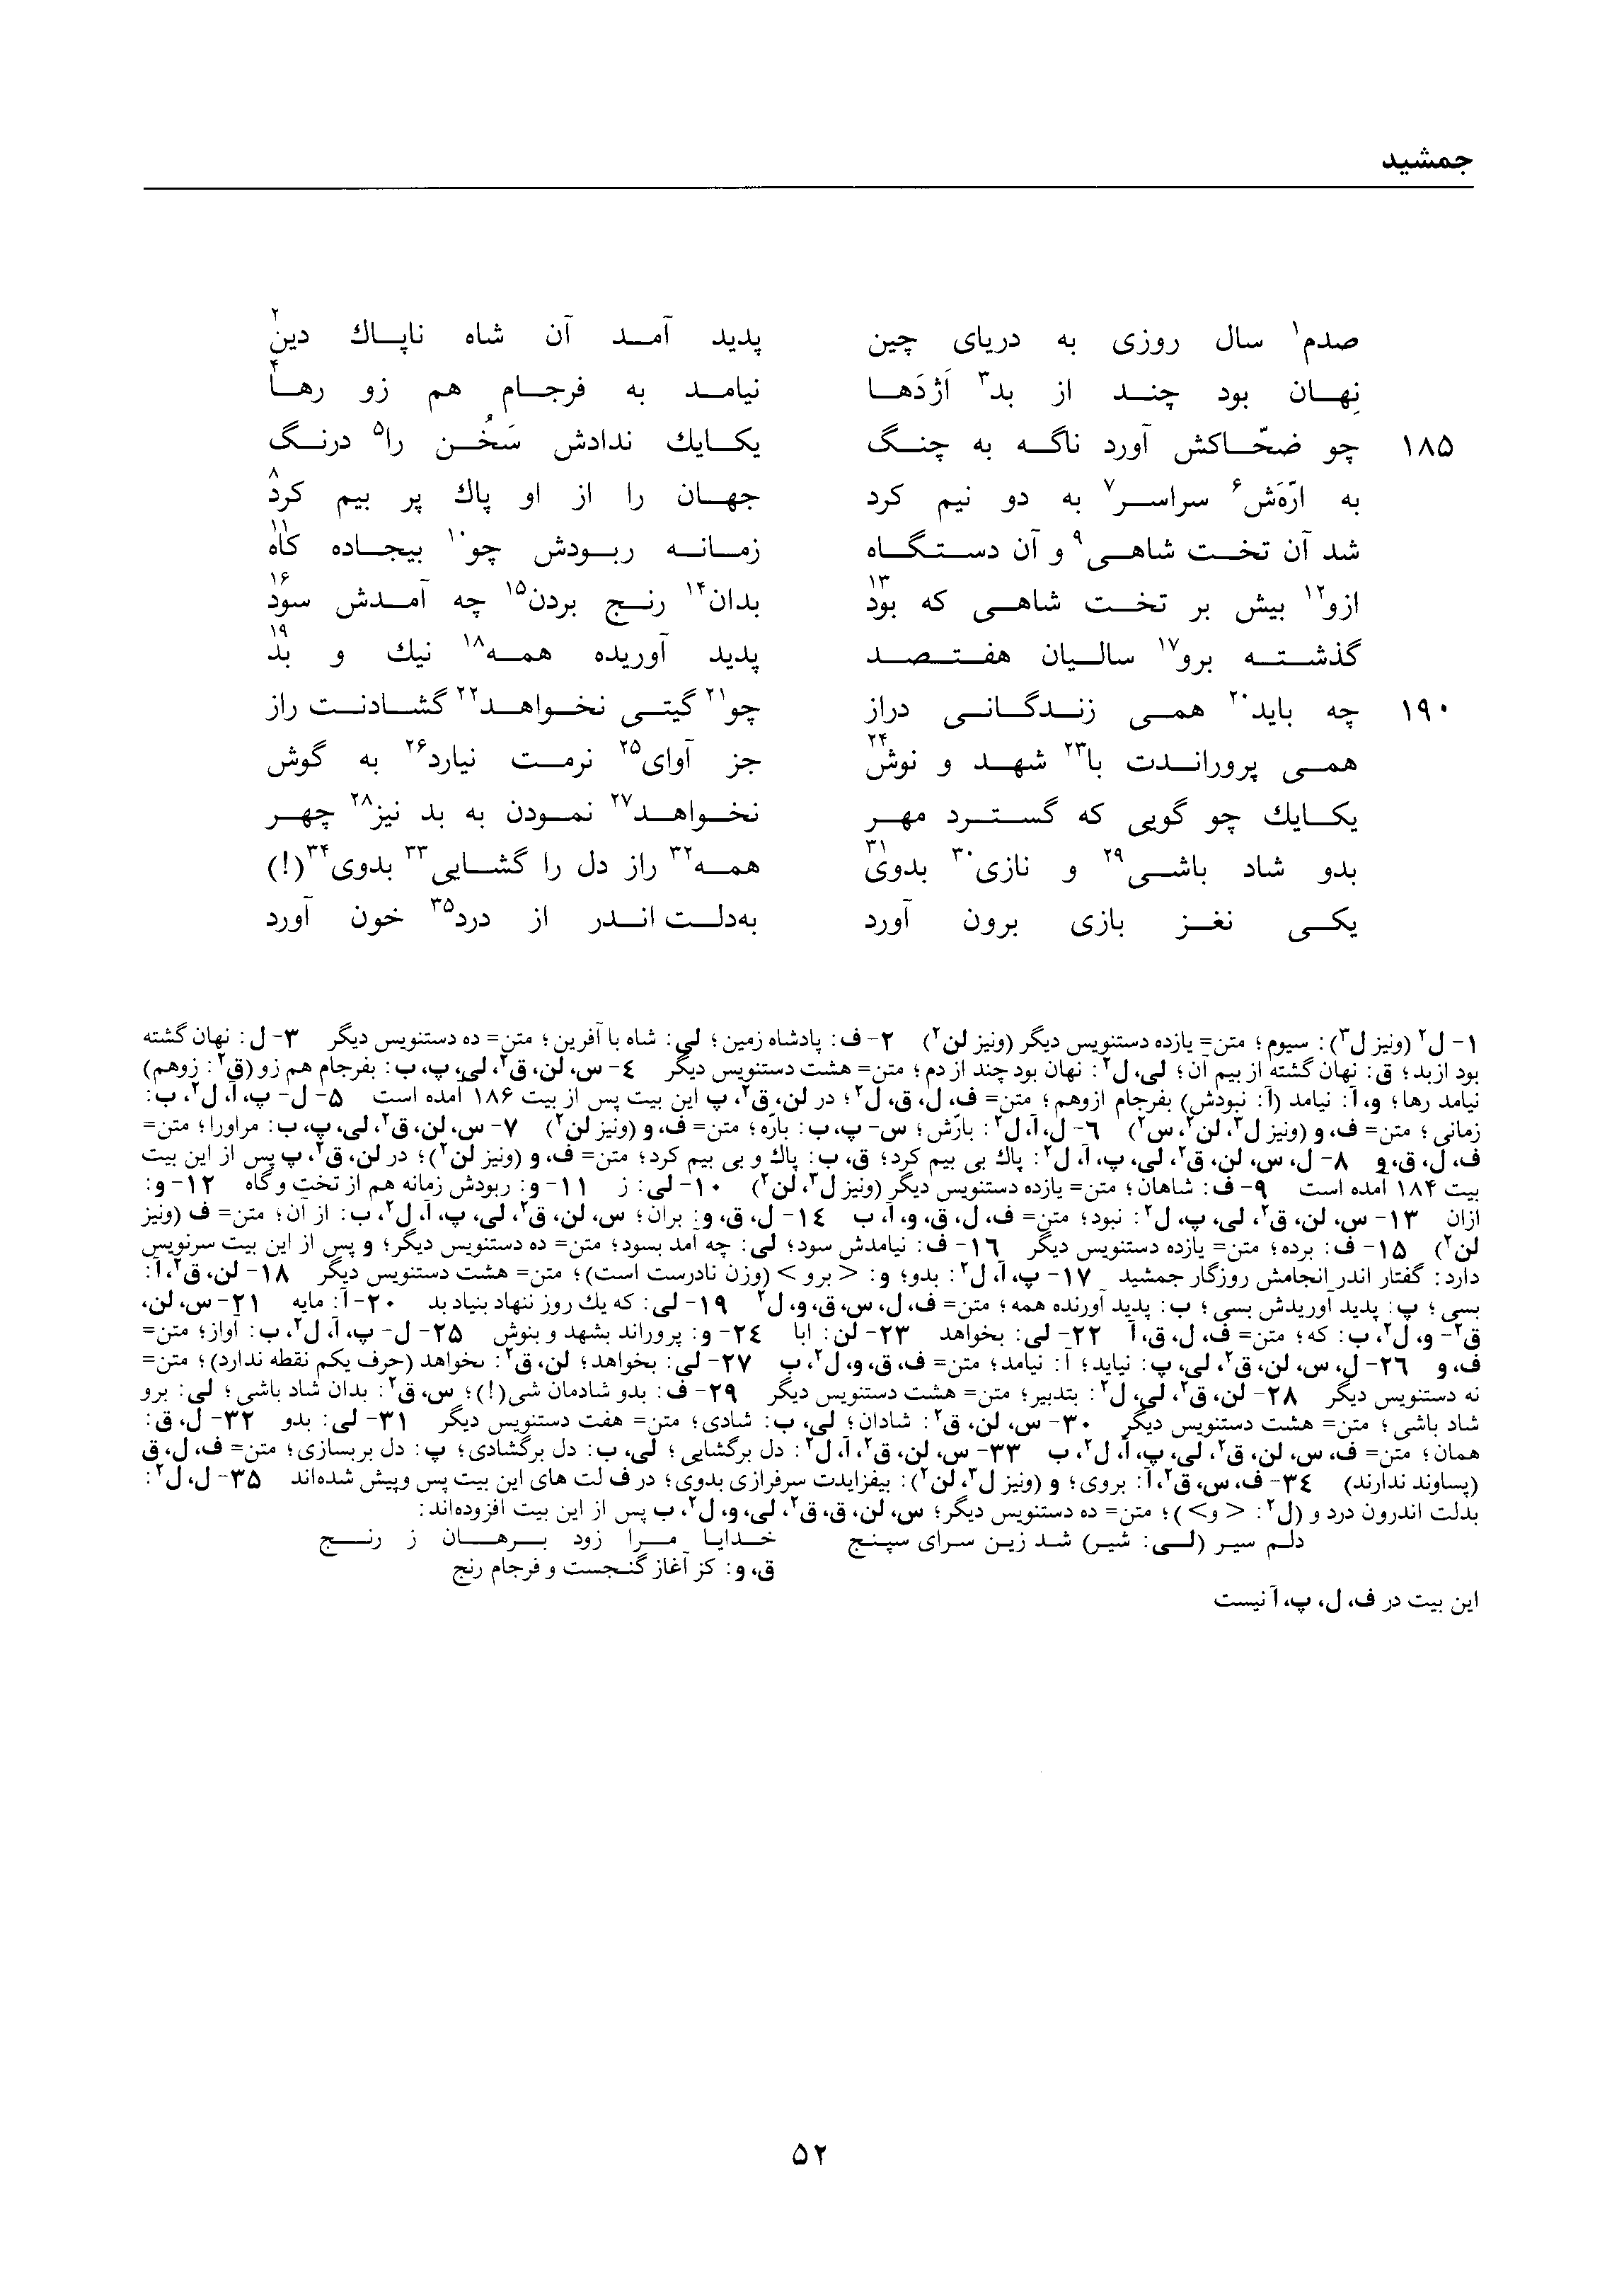 vol. 1, p. 52